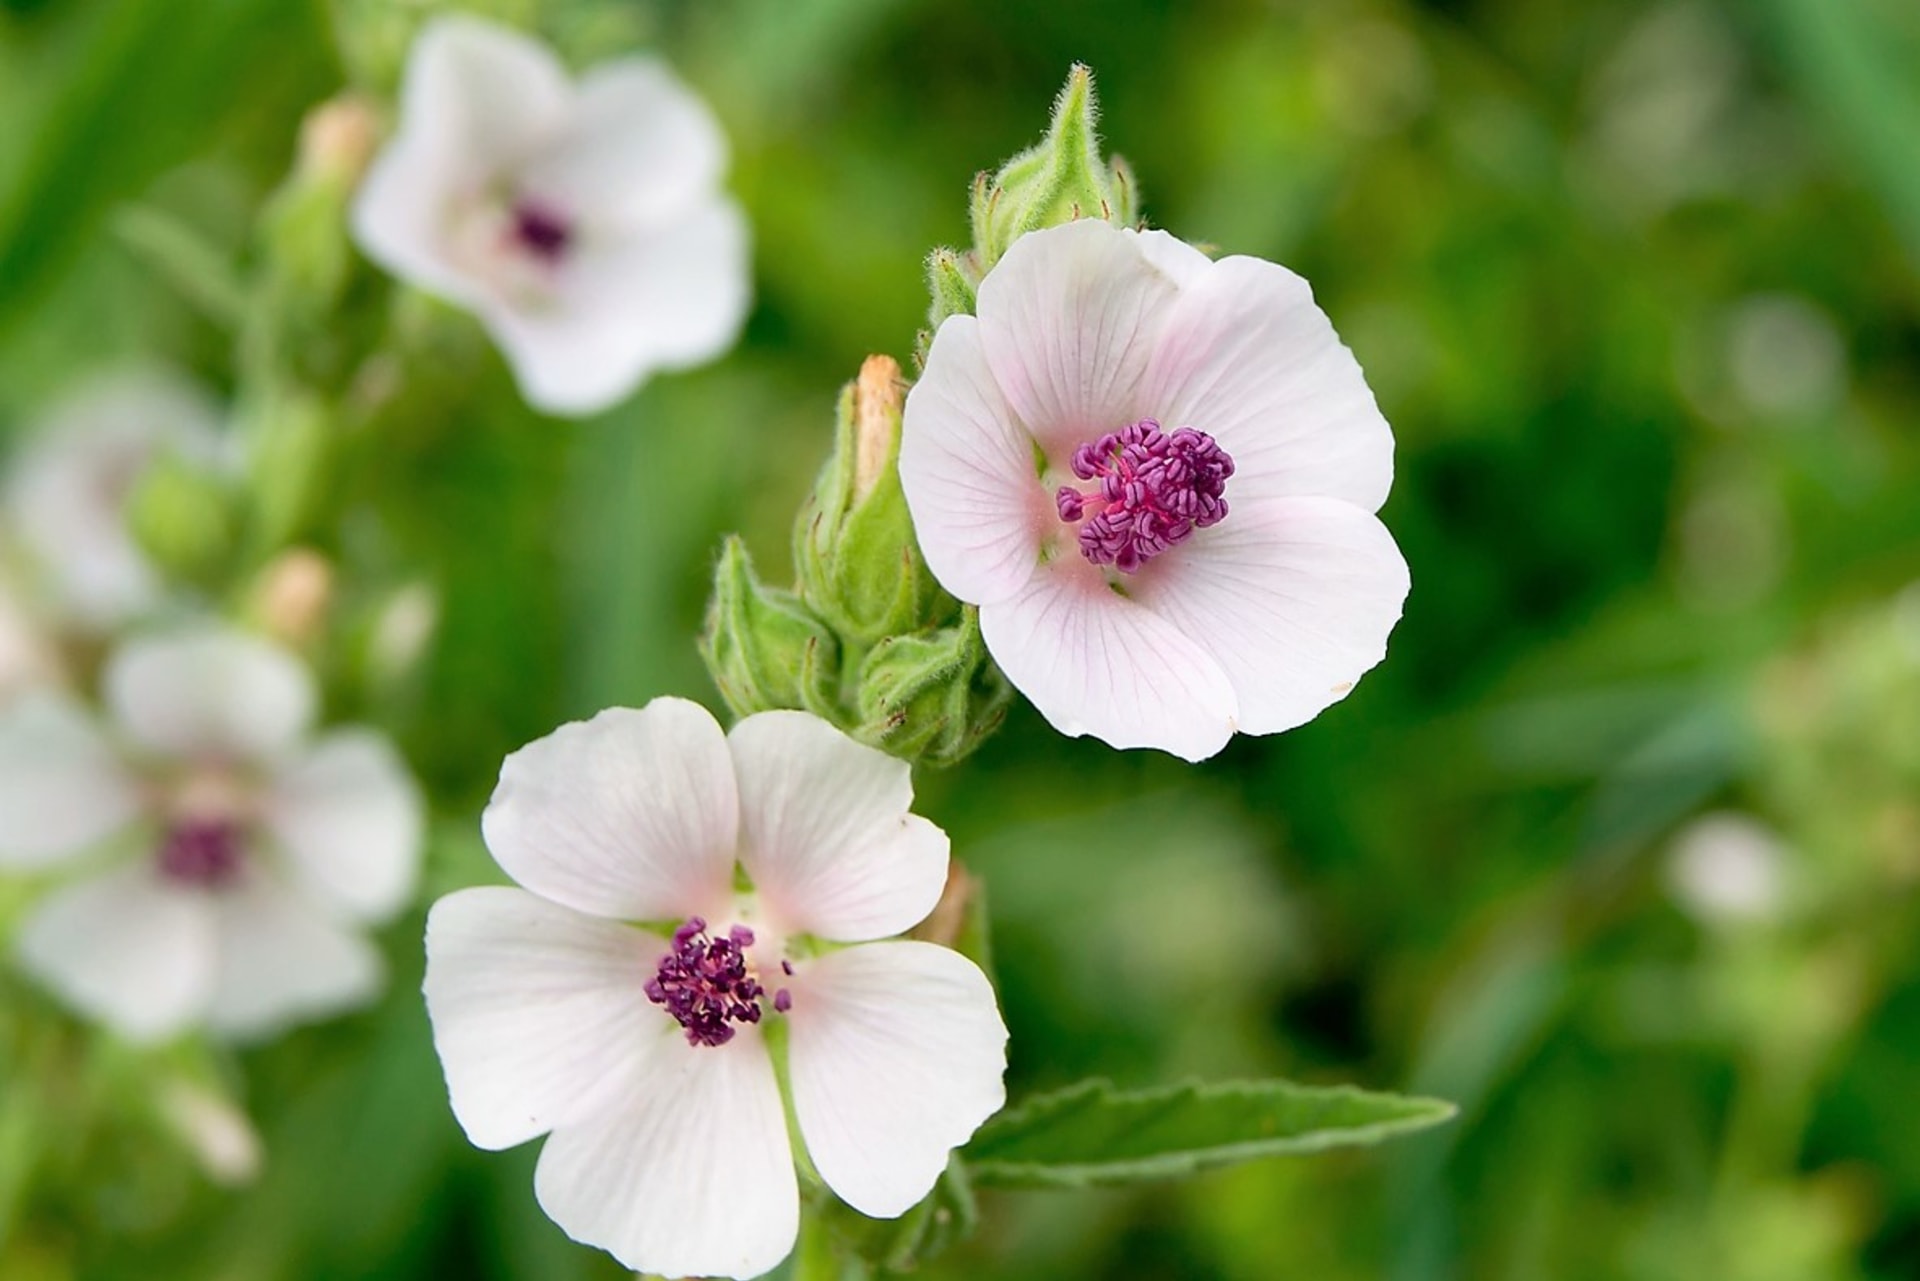 Proskurník lékařský (Althaea officinalis) kvete od července do září bílými, narůžovělými nebo nafialovělými květy, které mají pět okvětních lístků ve tvaru srdce.